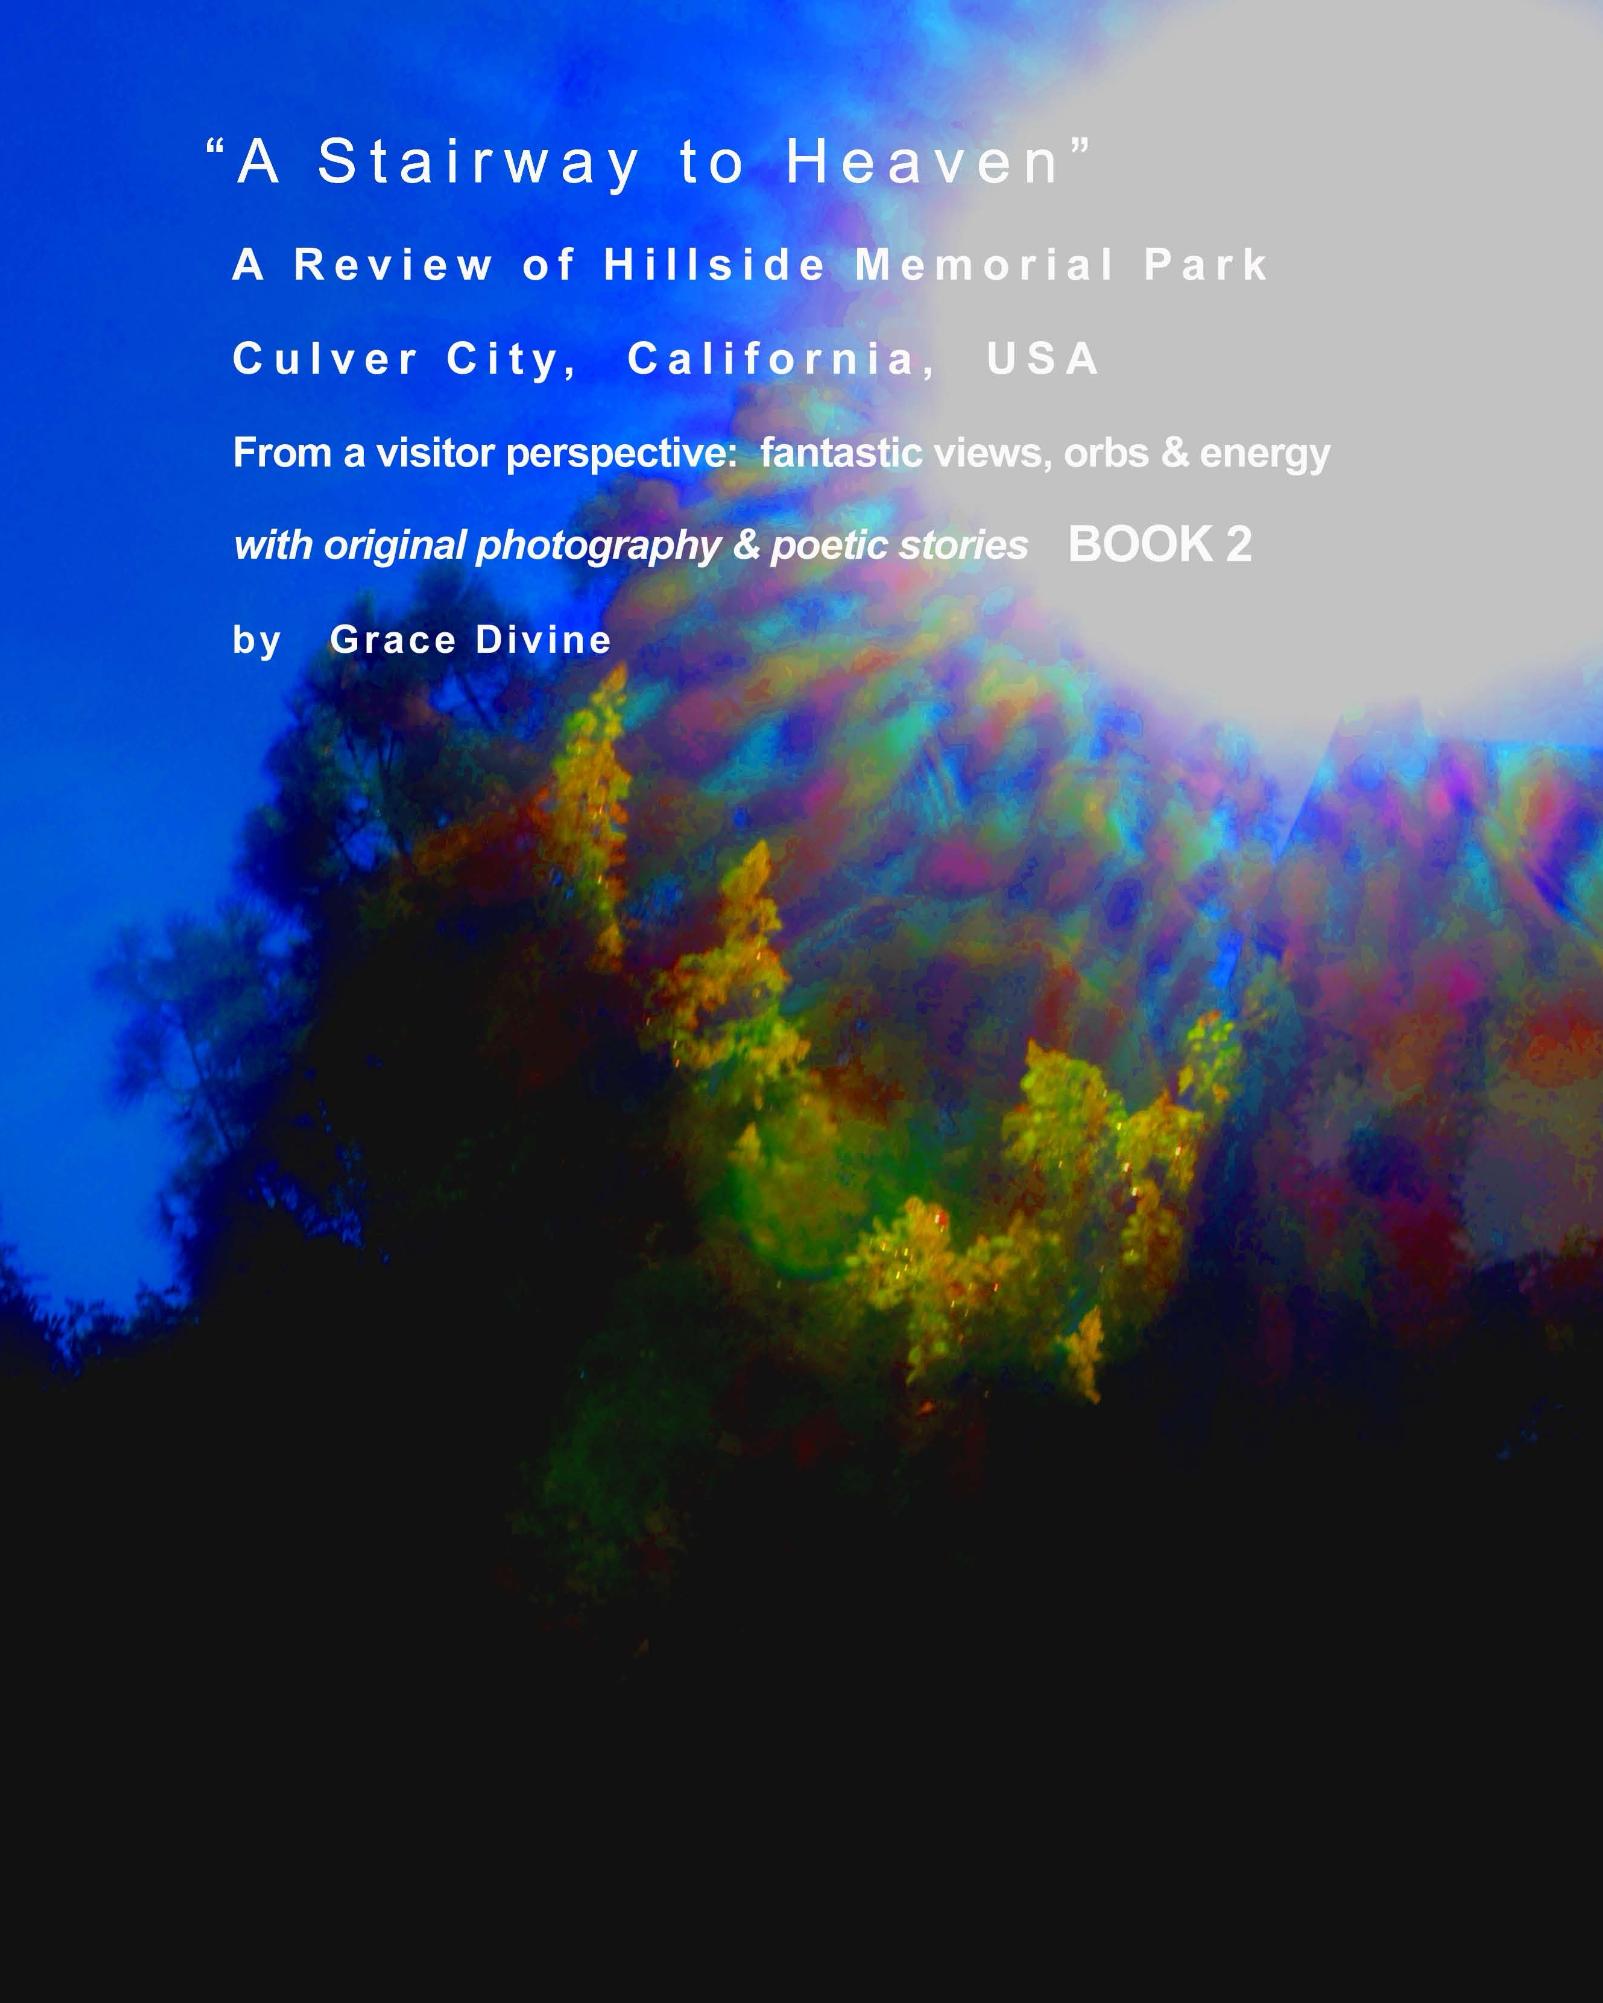 review-hillside-memorial-park-photography-images-art-grace-divine